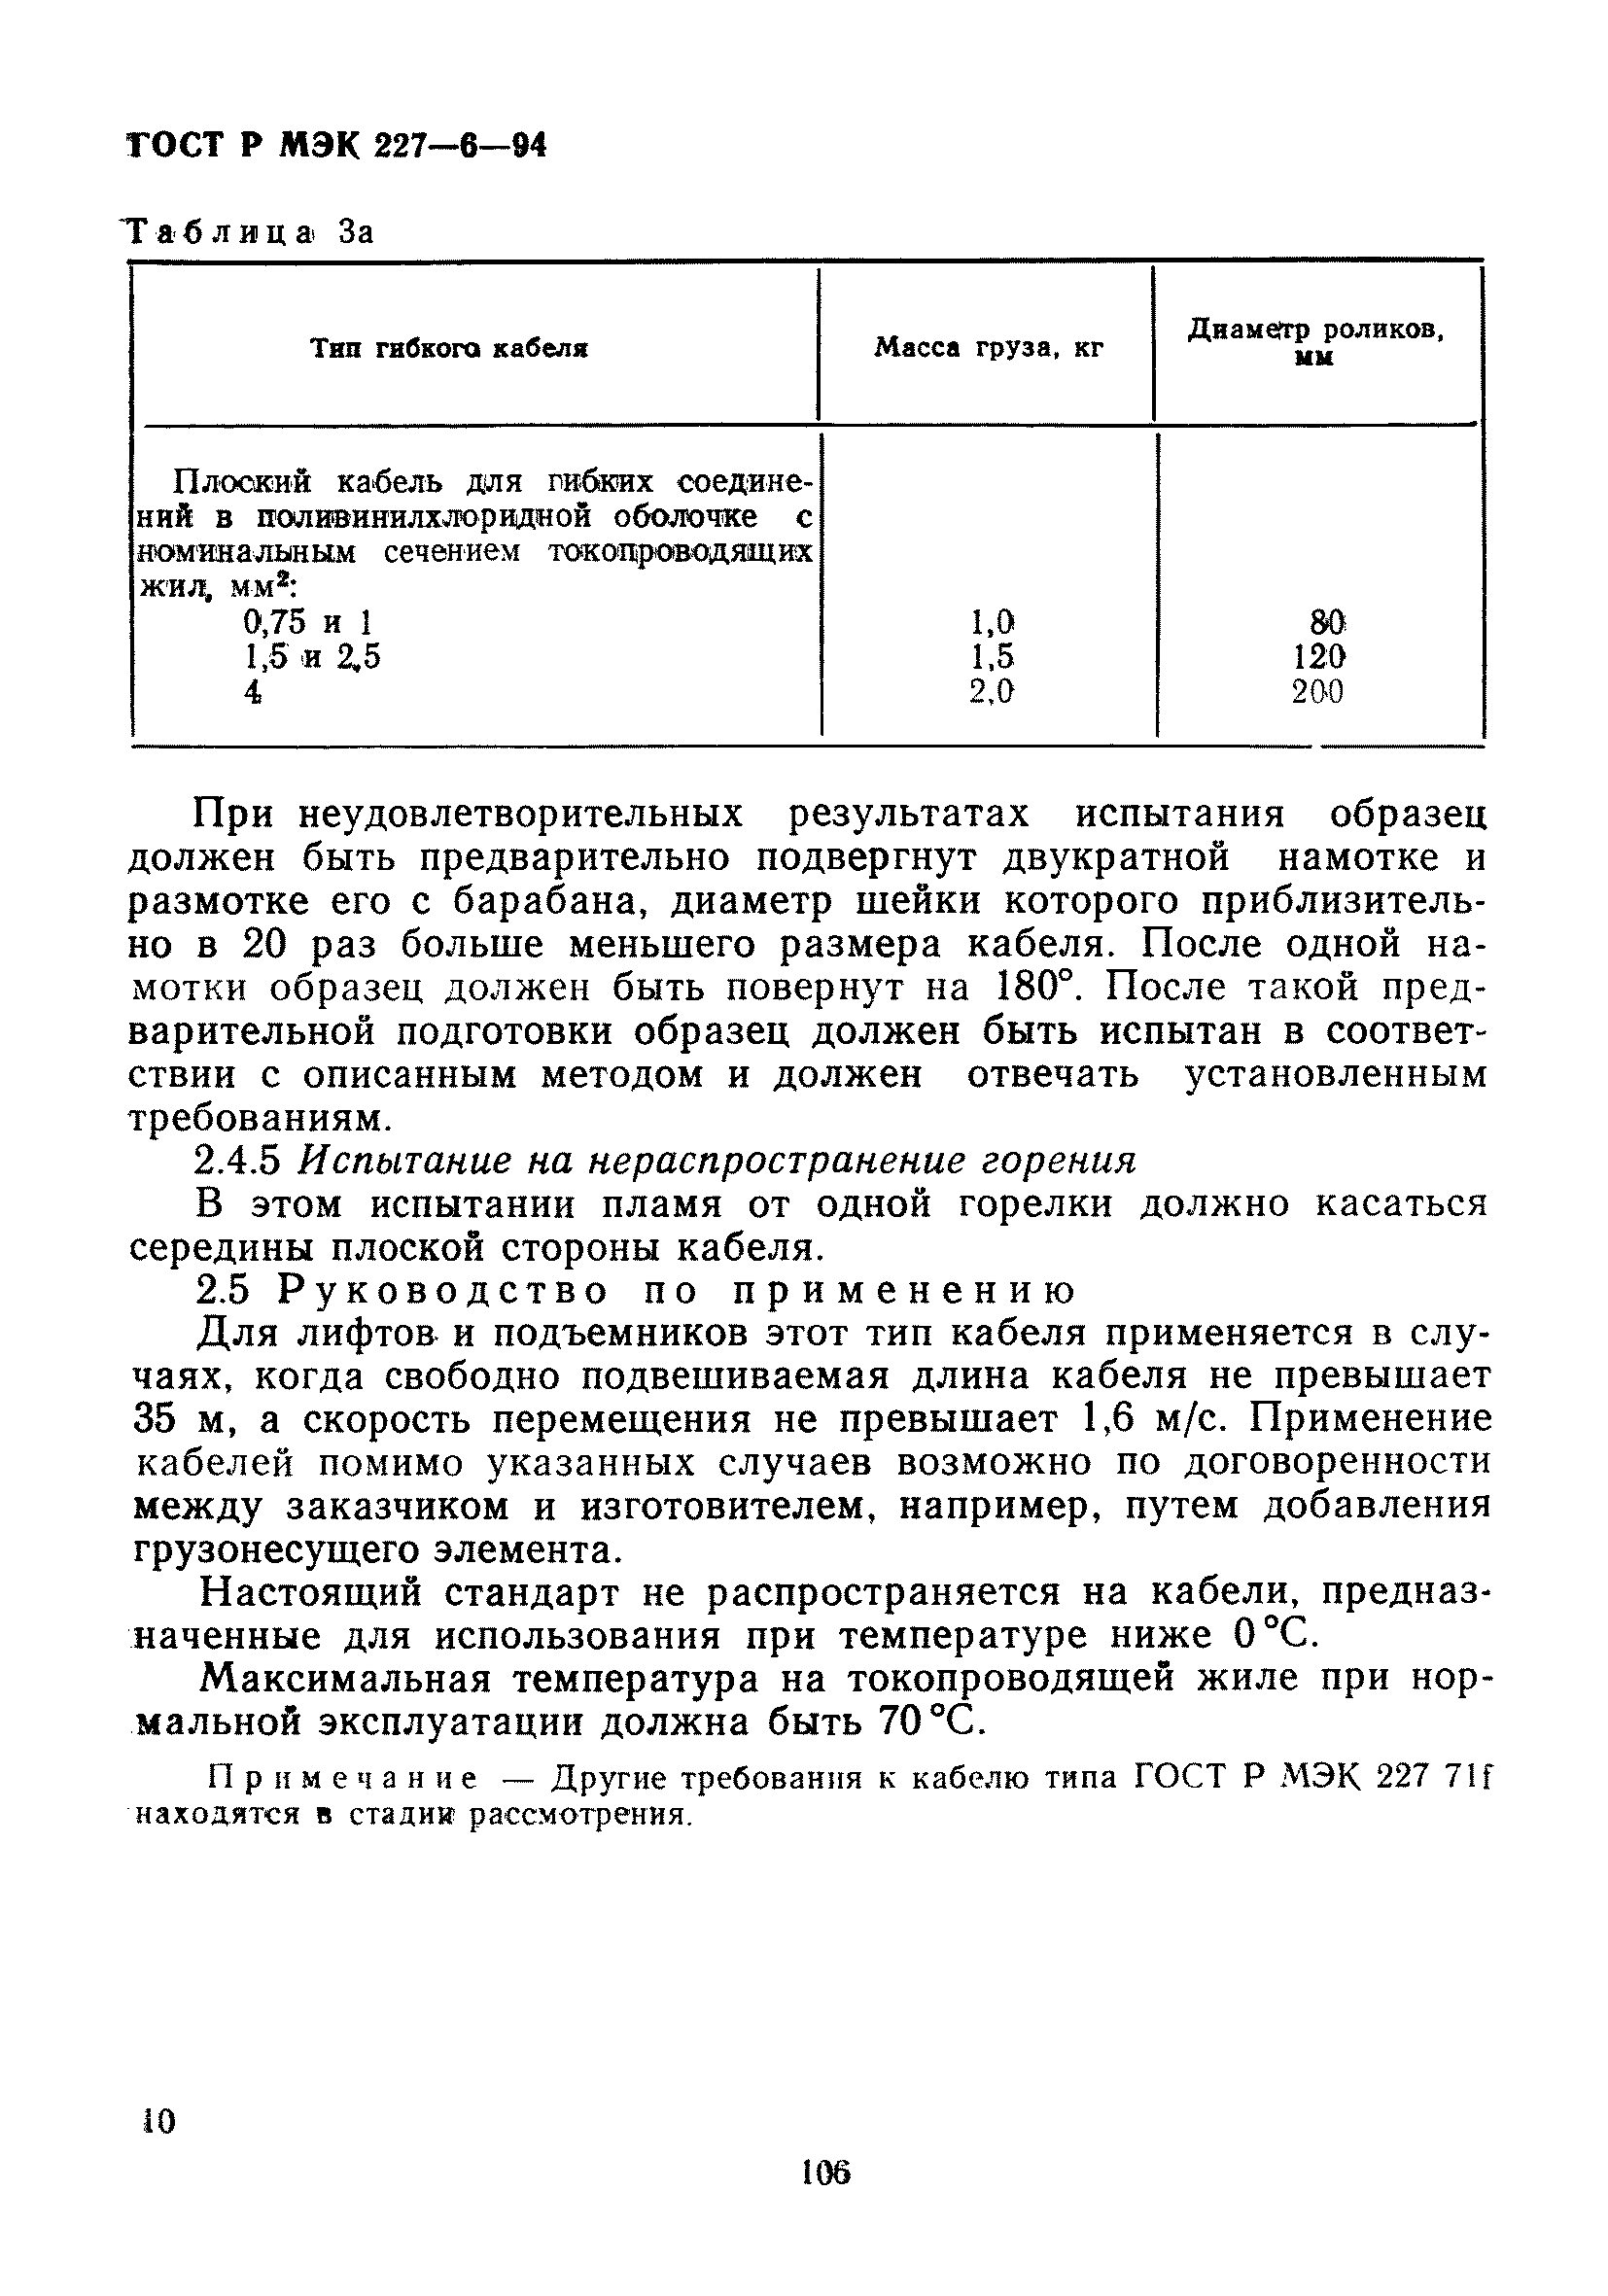 ГОСТ Р МЭК 227-6-94